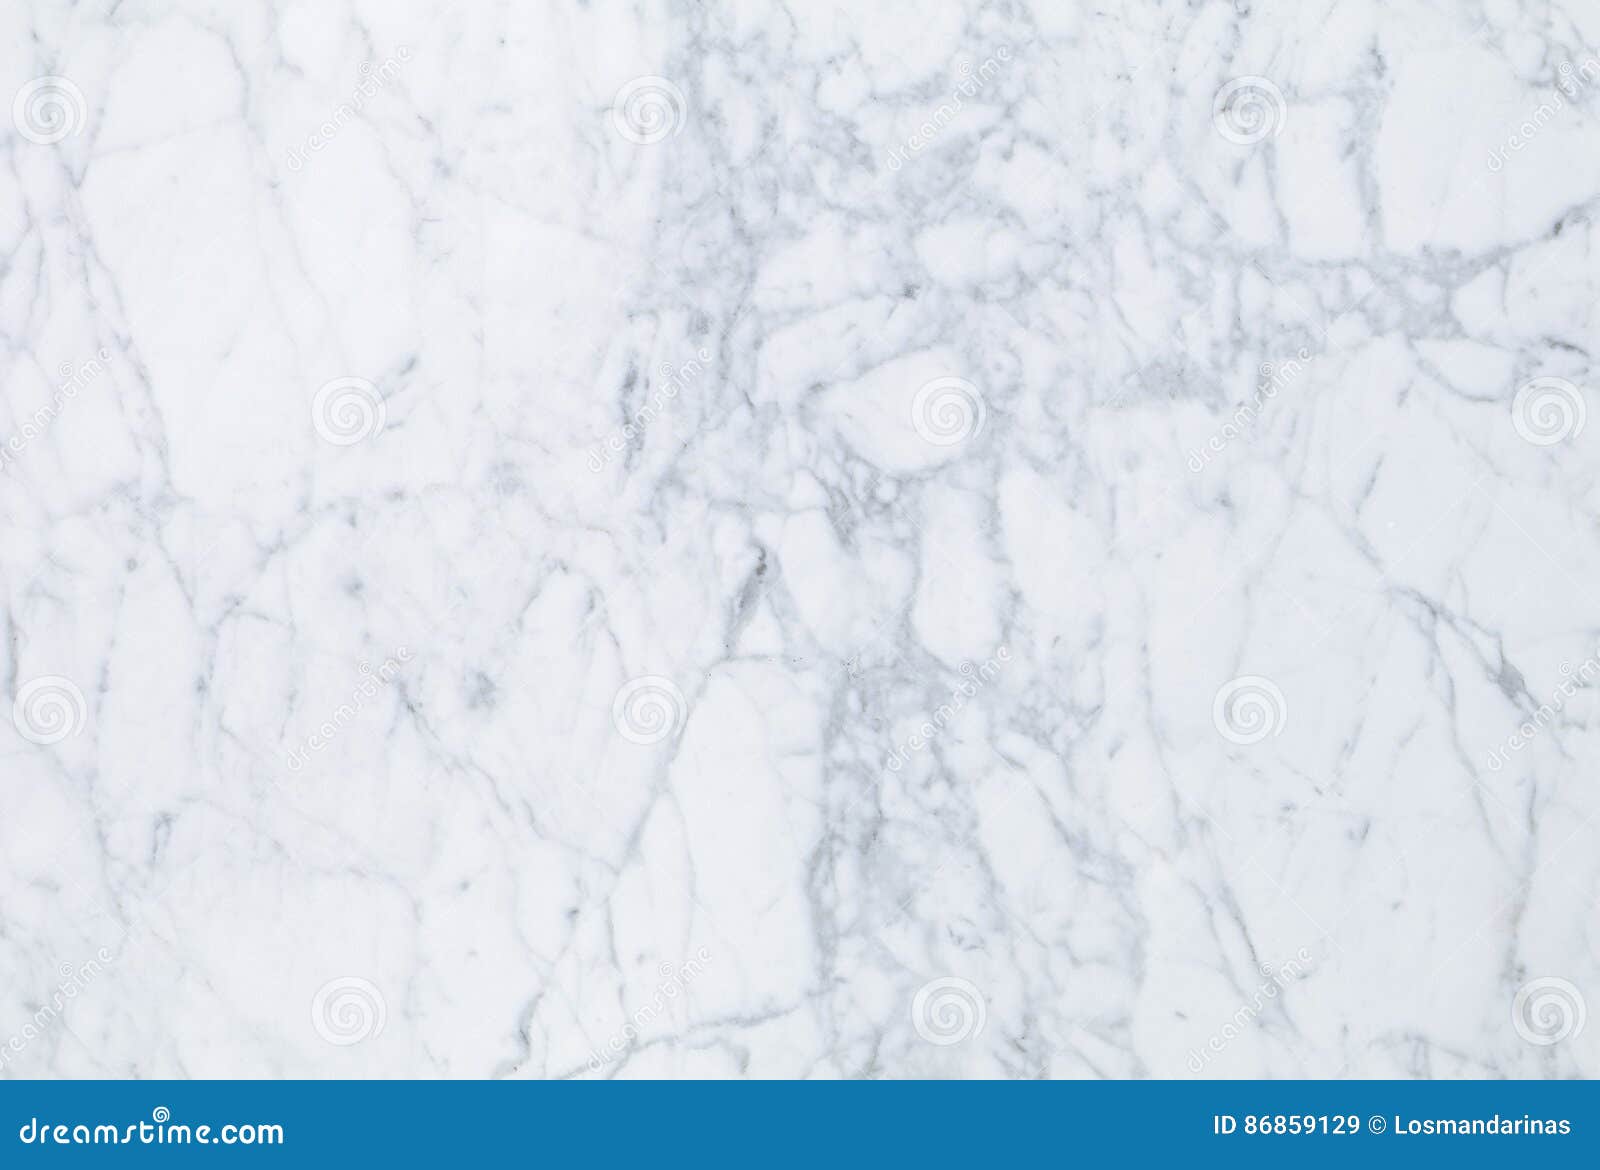 natural bianco venato marble texture